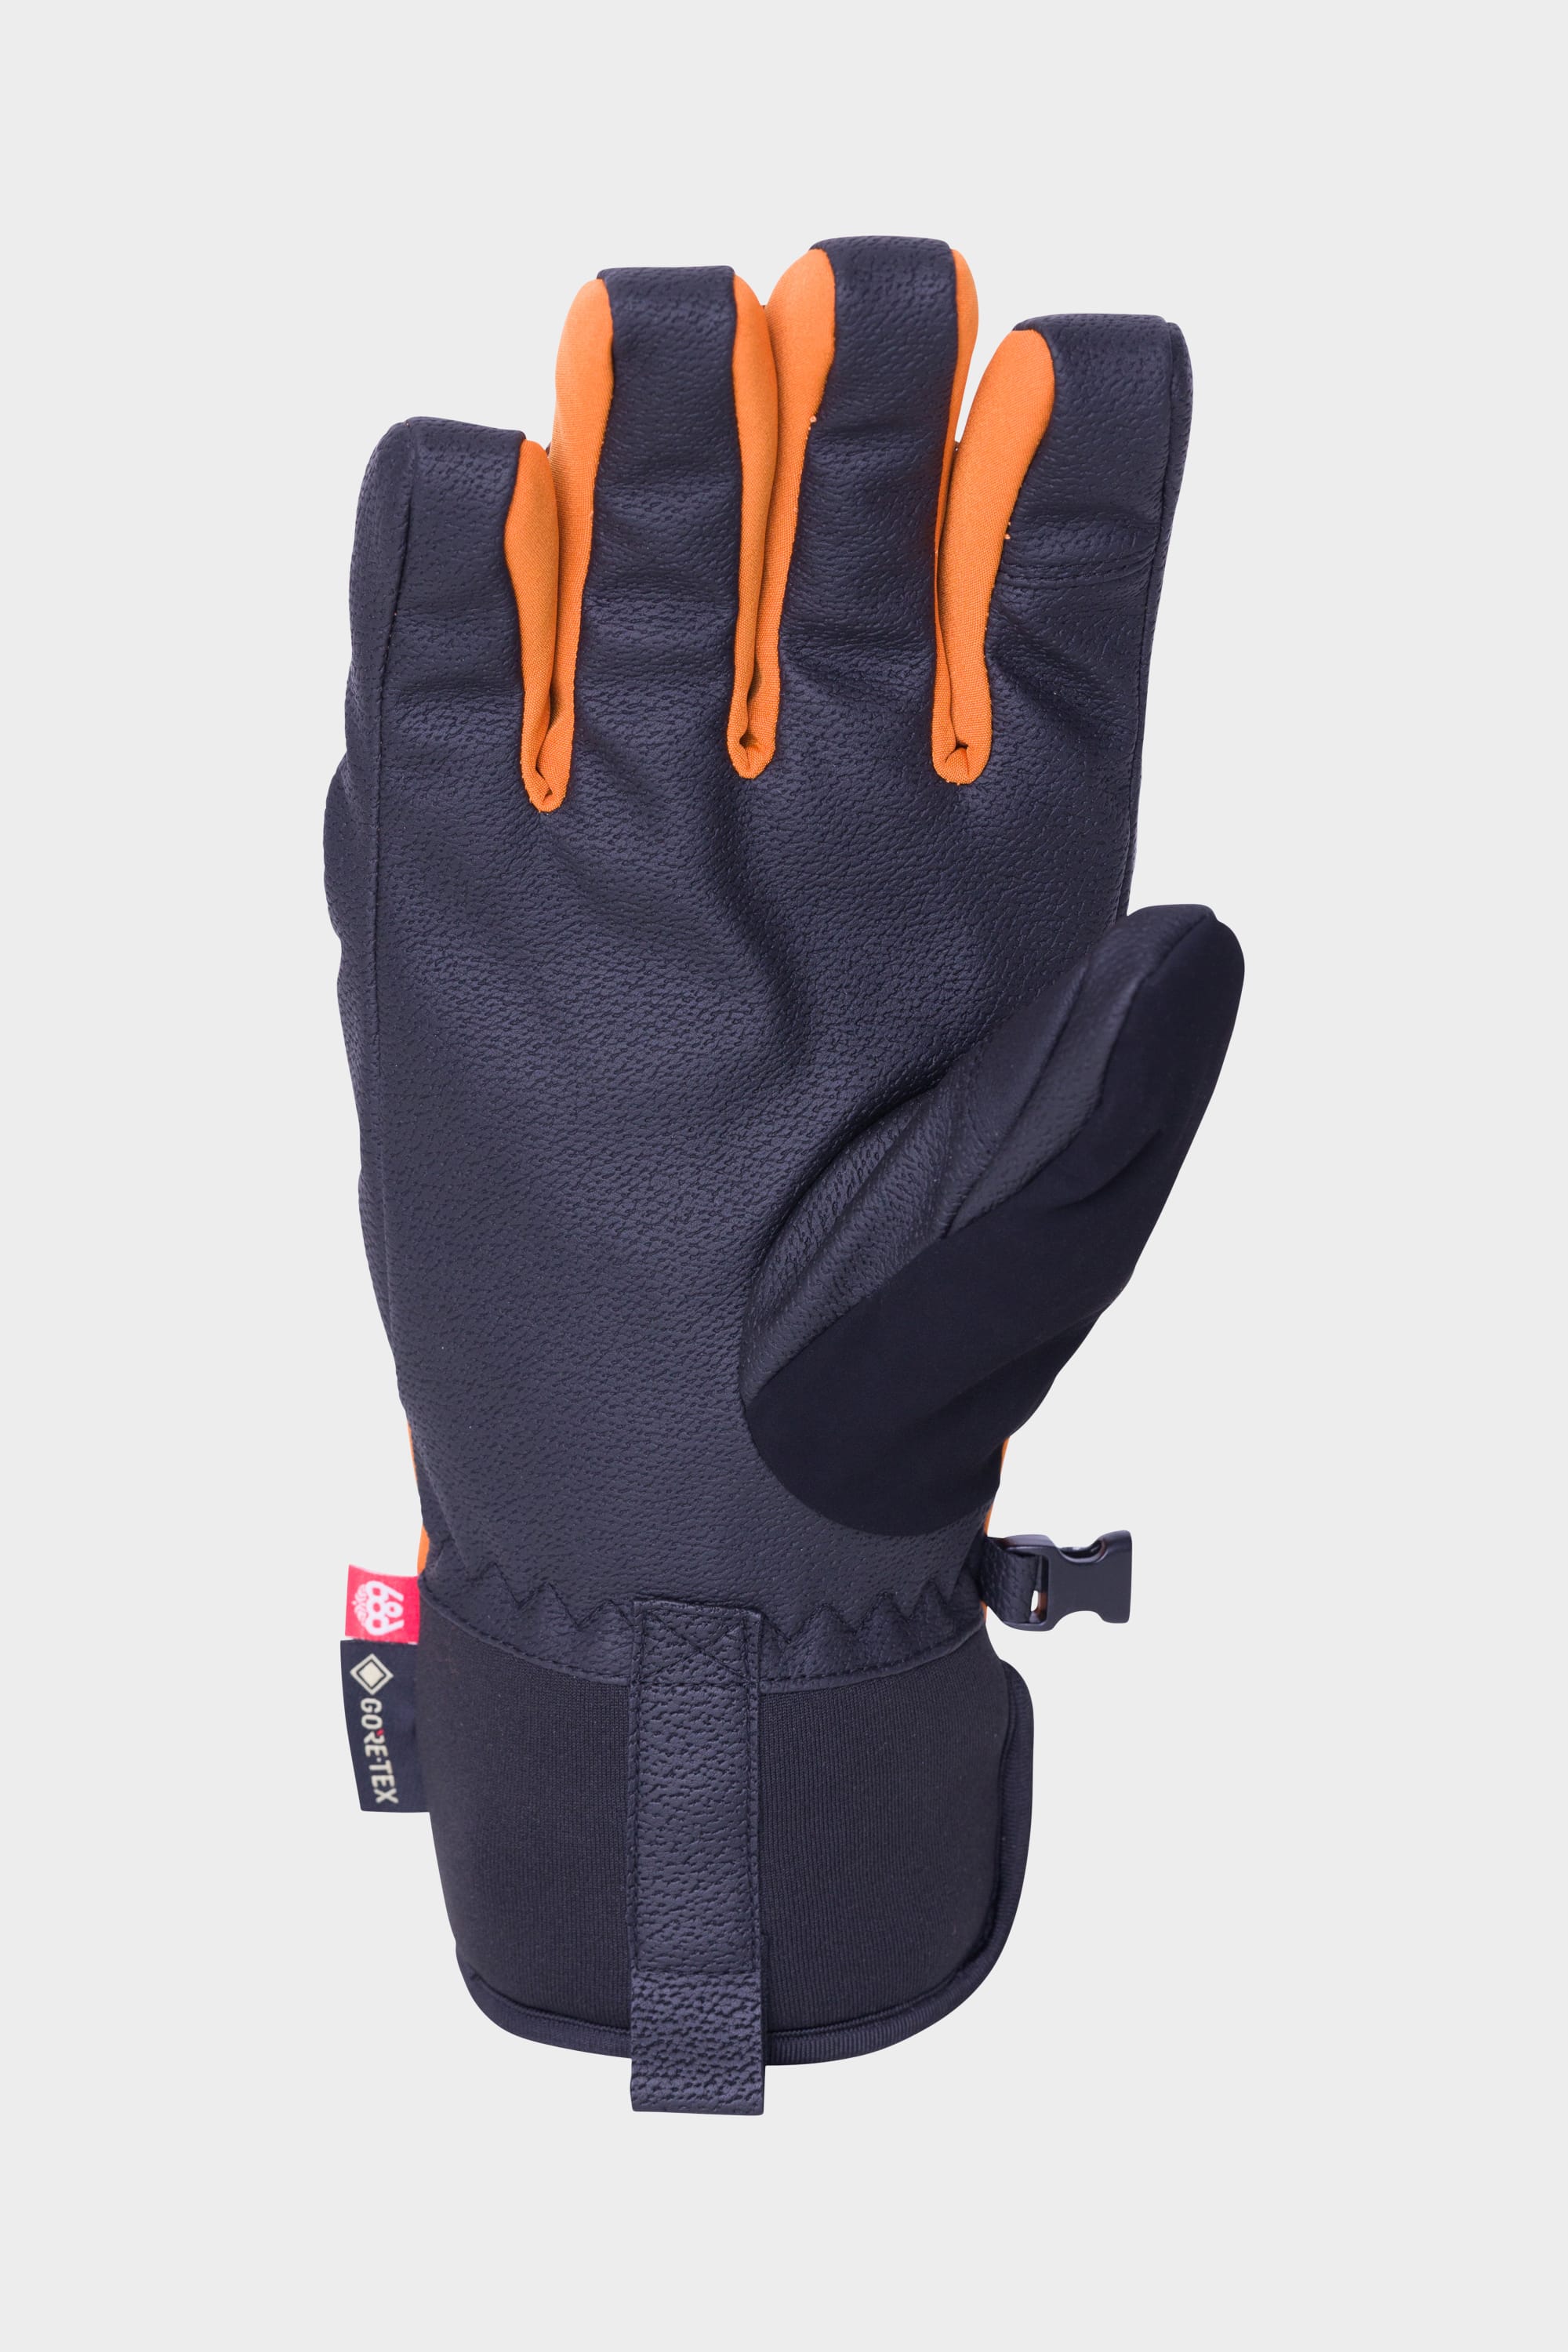 686 Men's GORE-TEX Linear Under Cuff Glove – 686.com